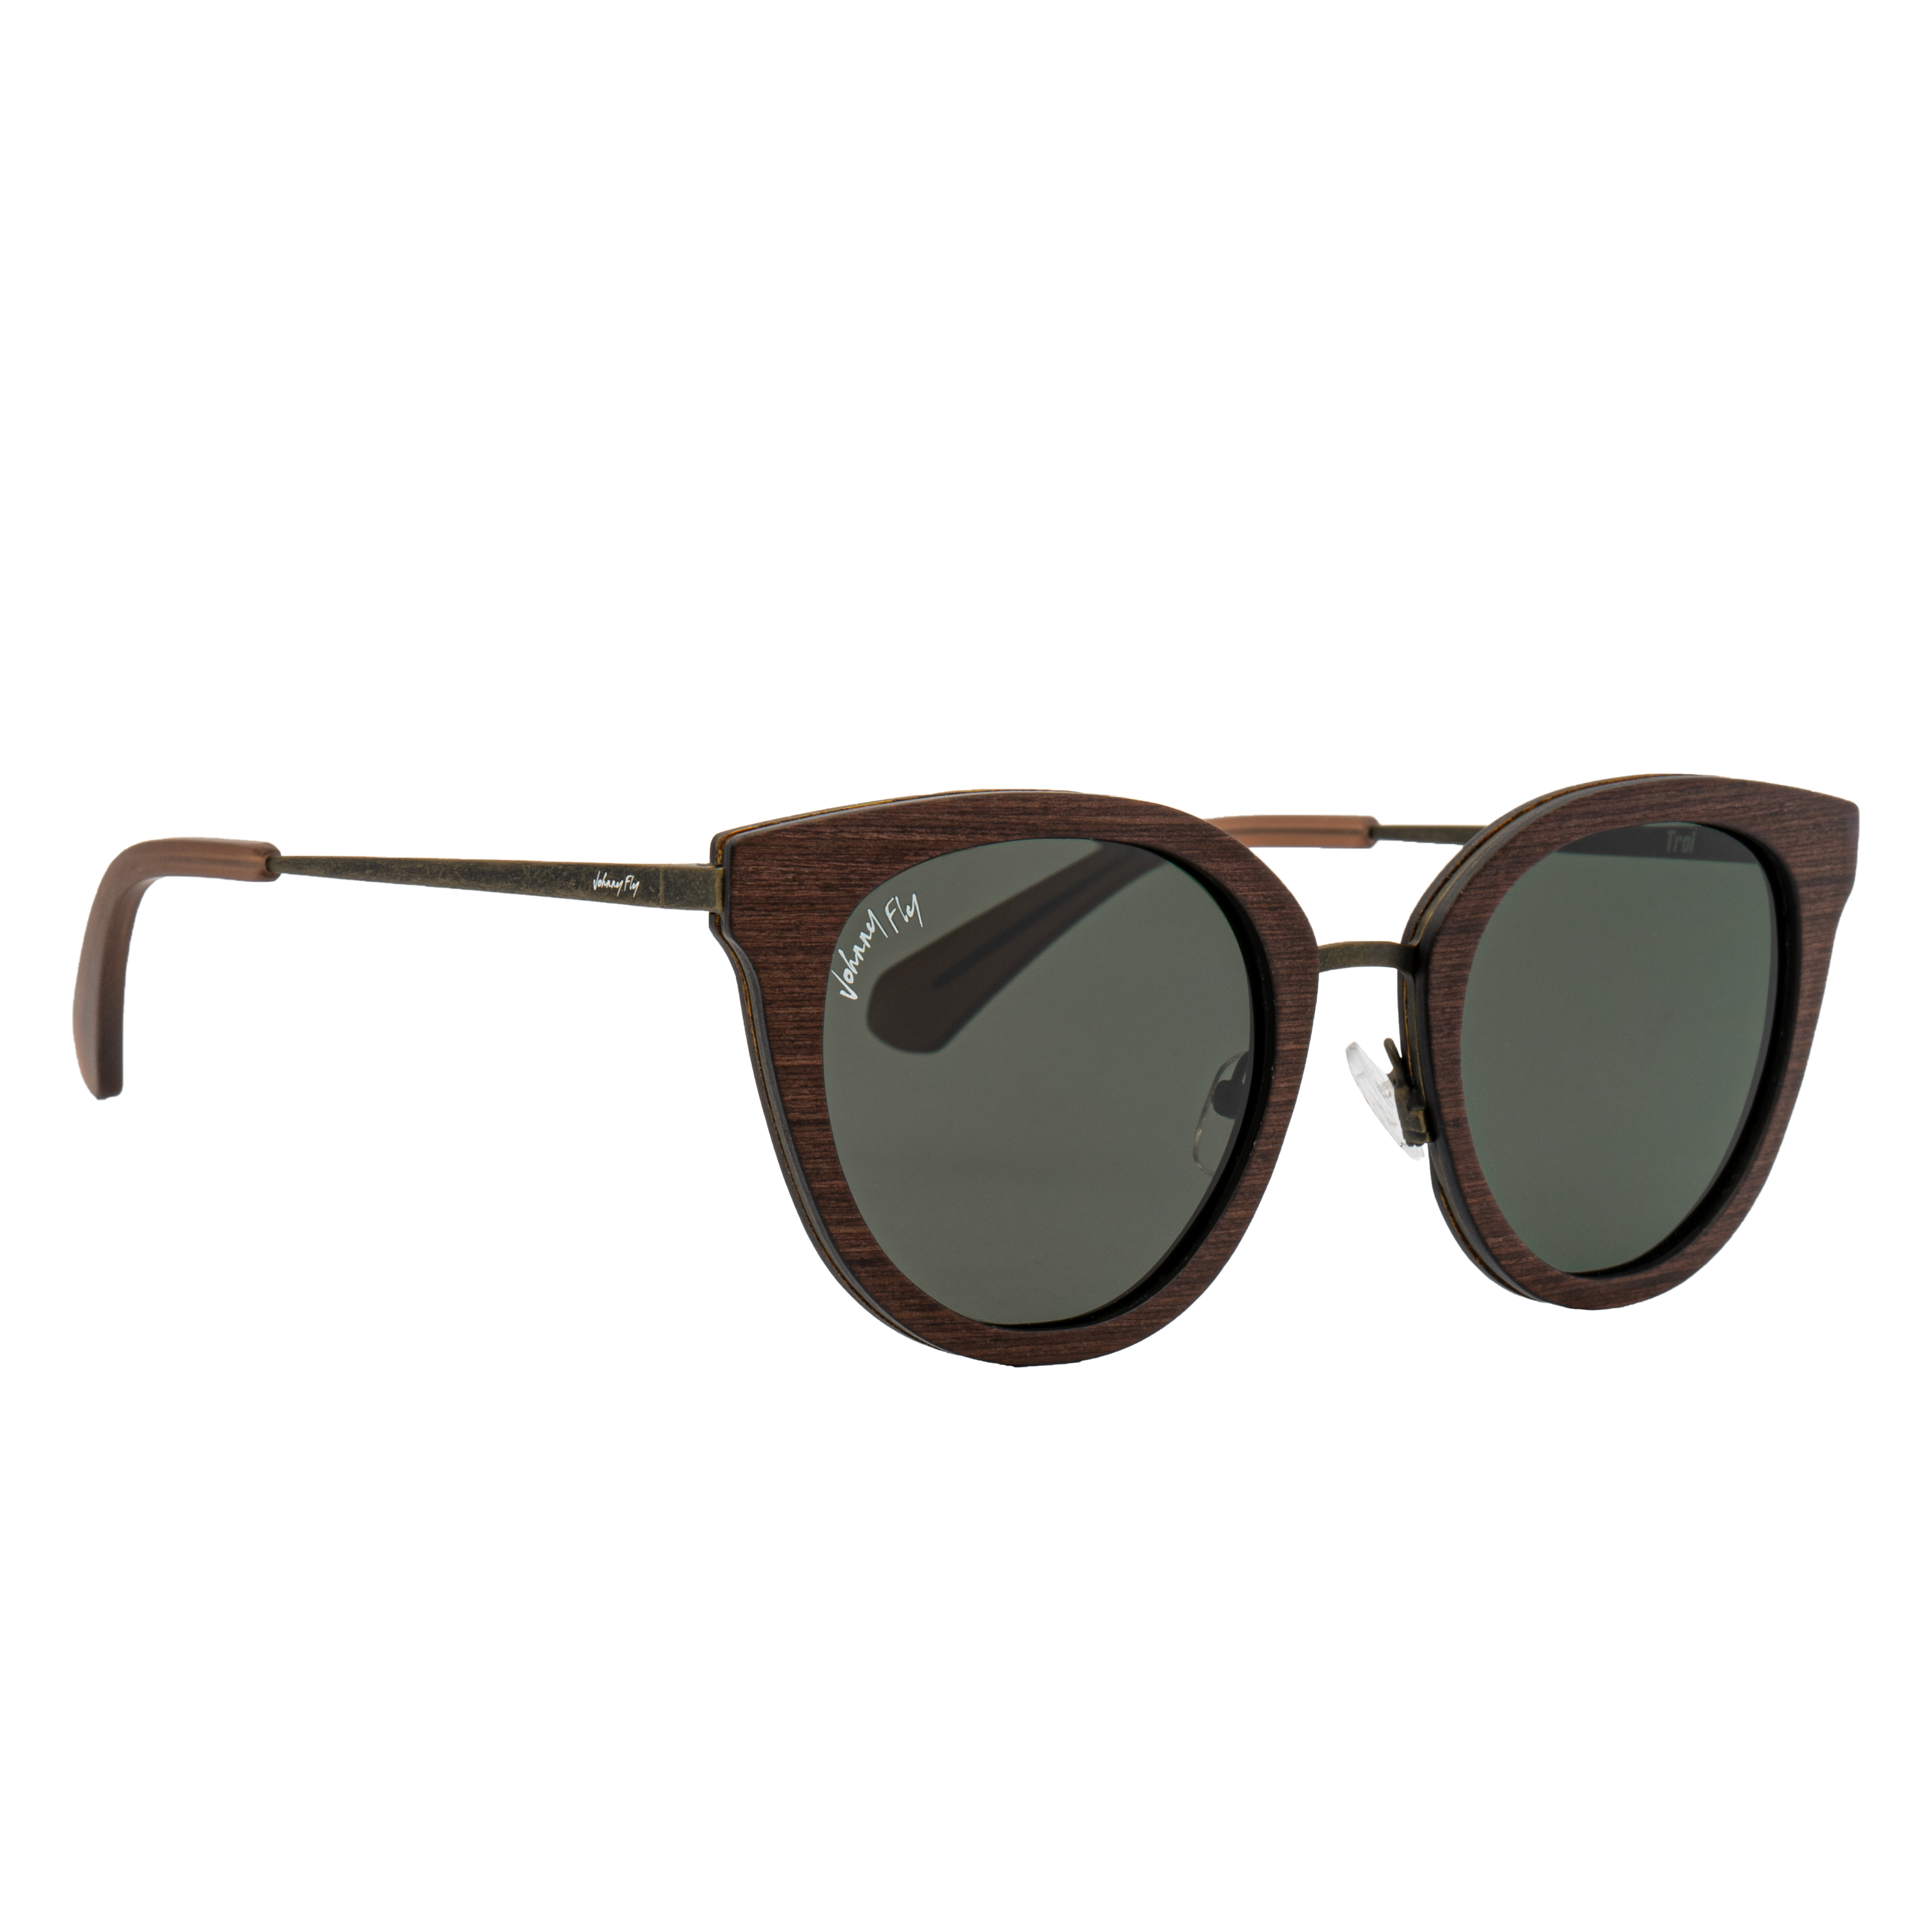 TROI - Weathered Olive - Sunglasses - Johnny Fly Eyewear 